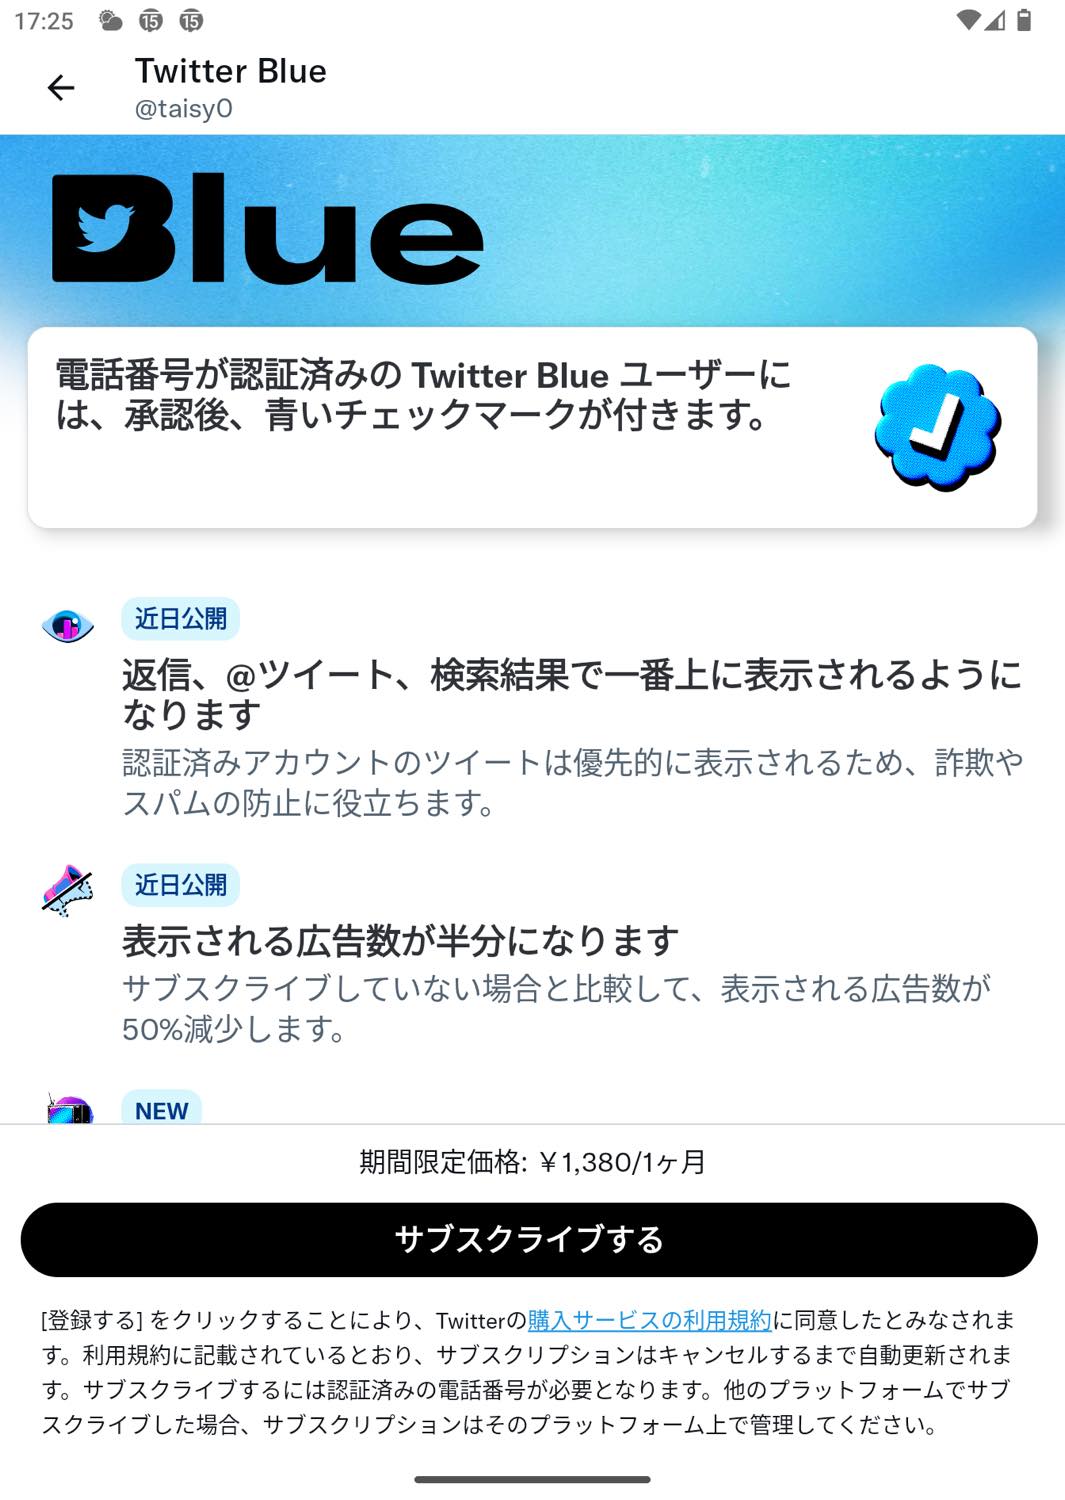 ｢Twitter Blue｣、Android向け公式アプリからも加入可能に − 月額料金はiOS版と同じ1,380円